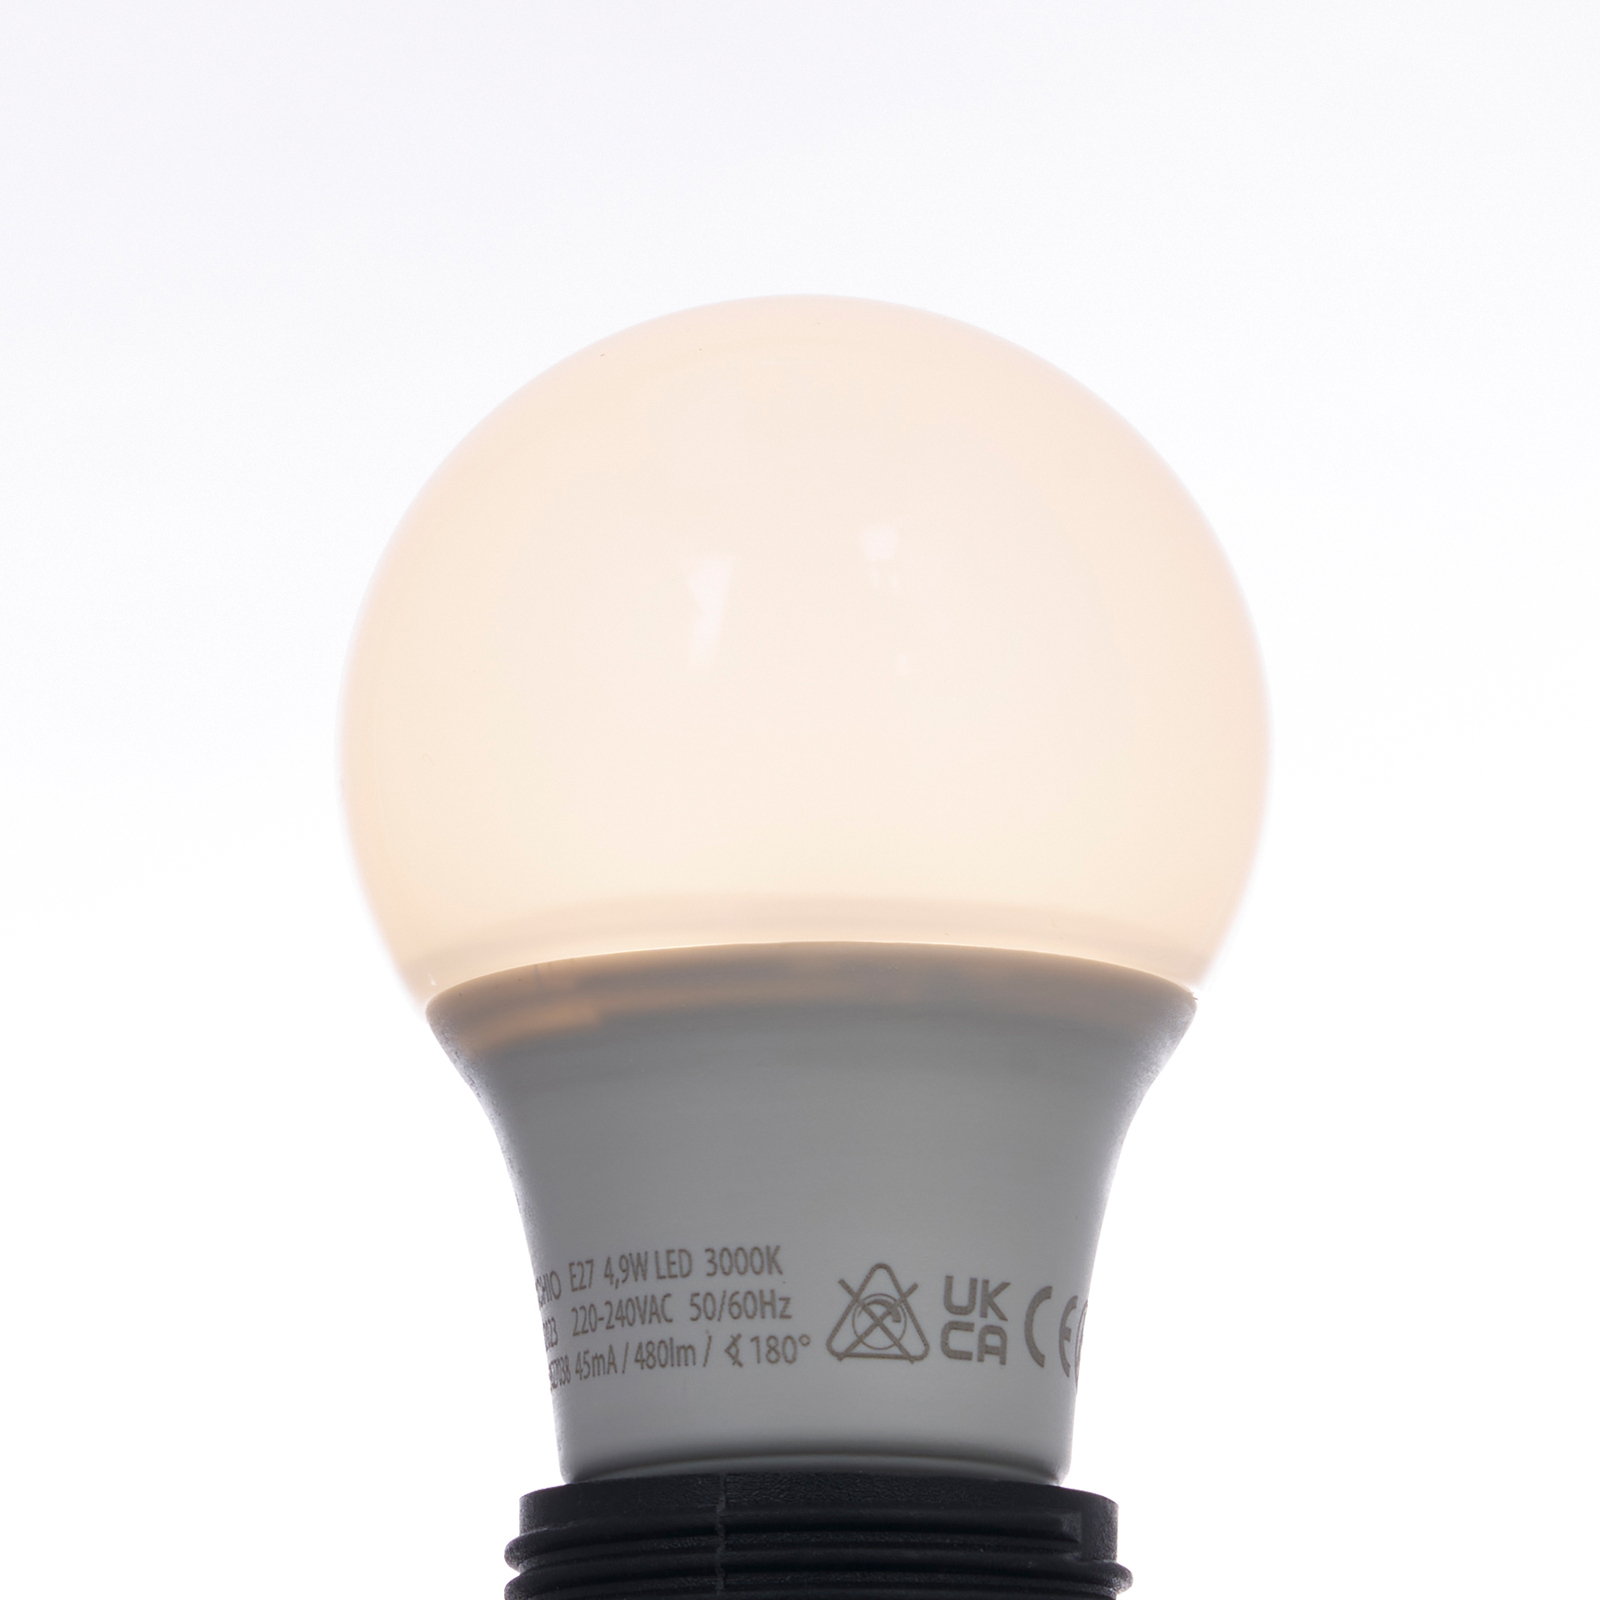 Arcchio LED-lampa E27 A60 4,9W opal 3 000K 480 lm